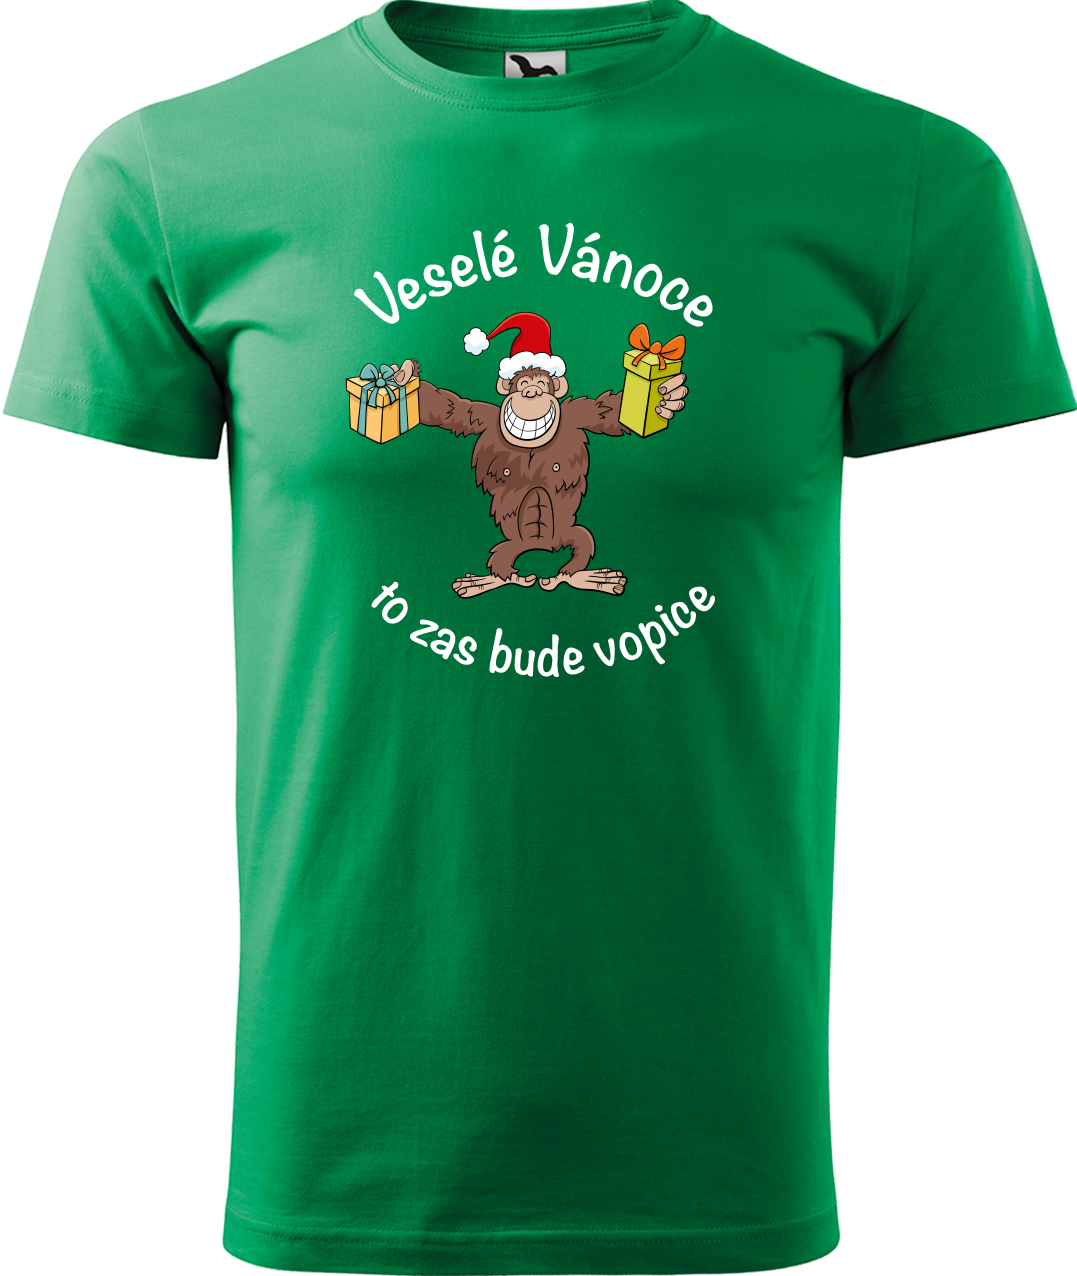 Pánské vánoční tričko - Veselé Vánoce to zas bude vopice (hnědý opičák) Velikost: S, Barva: Středně zelená (16)